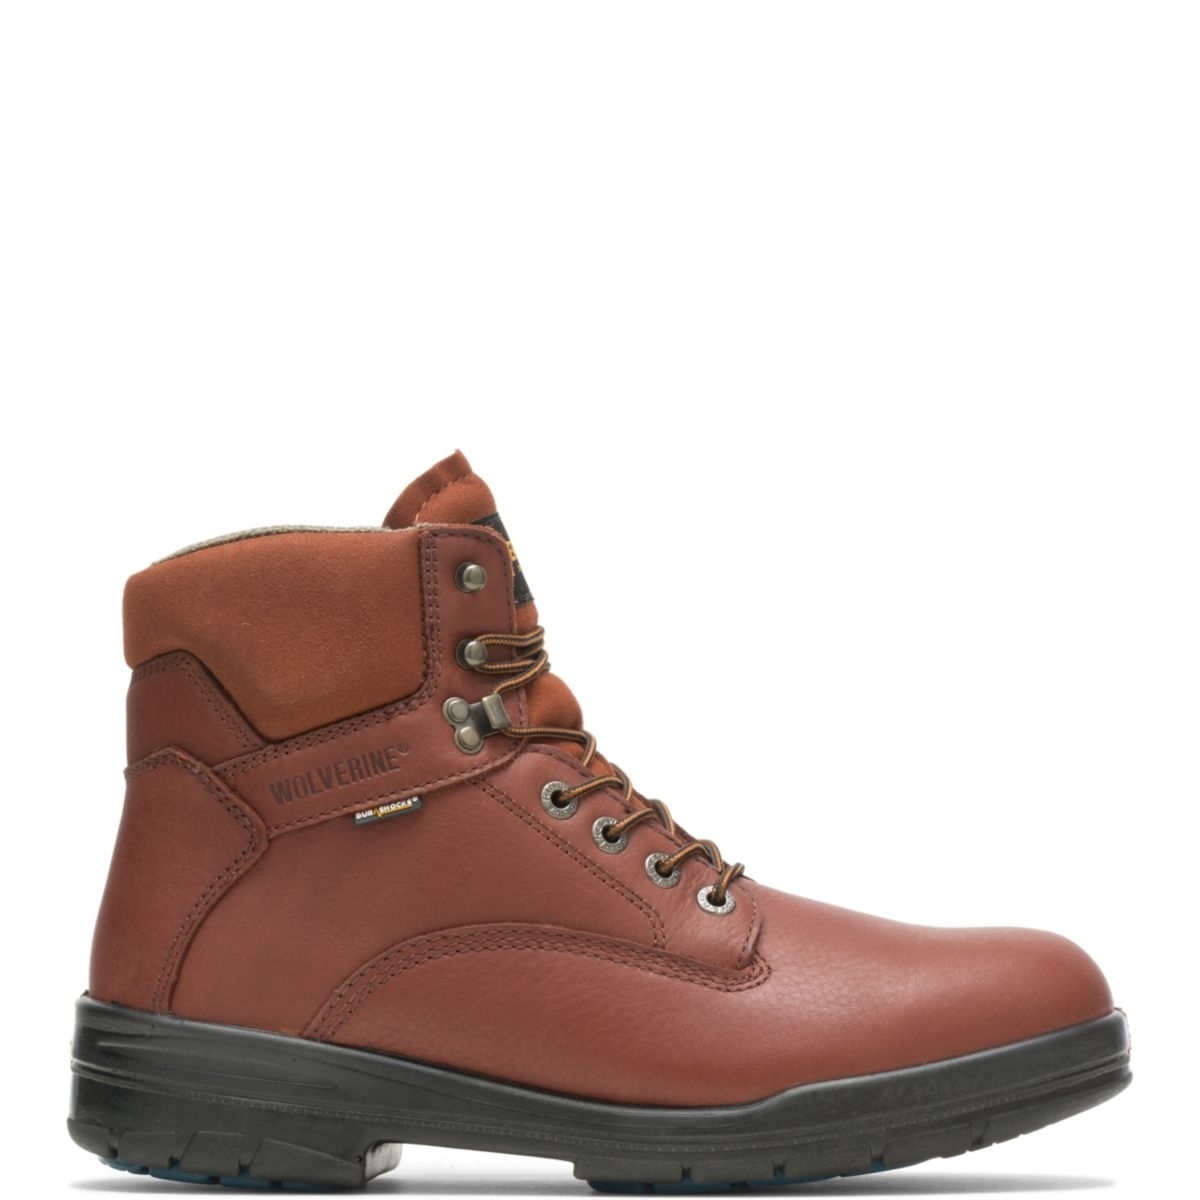 WOLVERINE Men's 6 DuraShocksÂ® Steel Toe Direct-Attach Work Boot Brown - W03120 BROWN - BROWN, 8.5